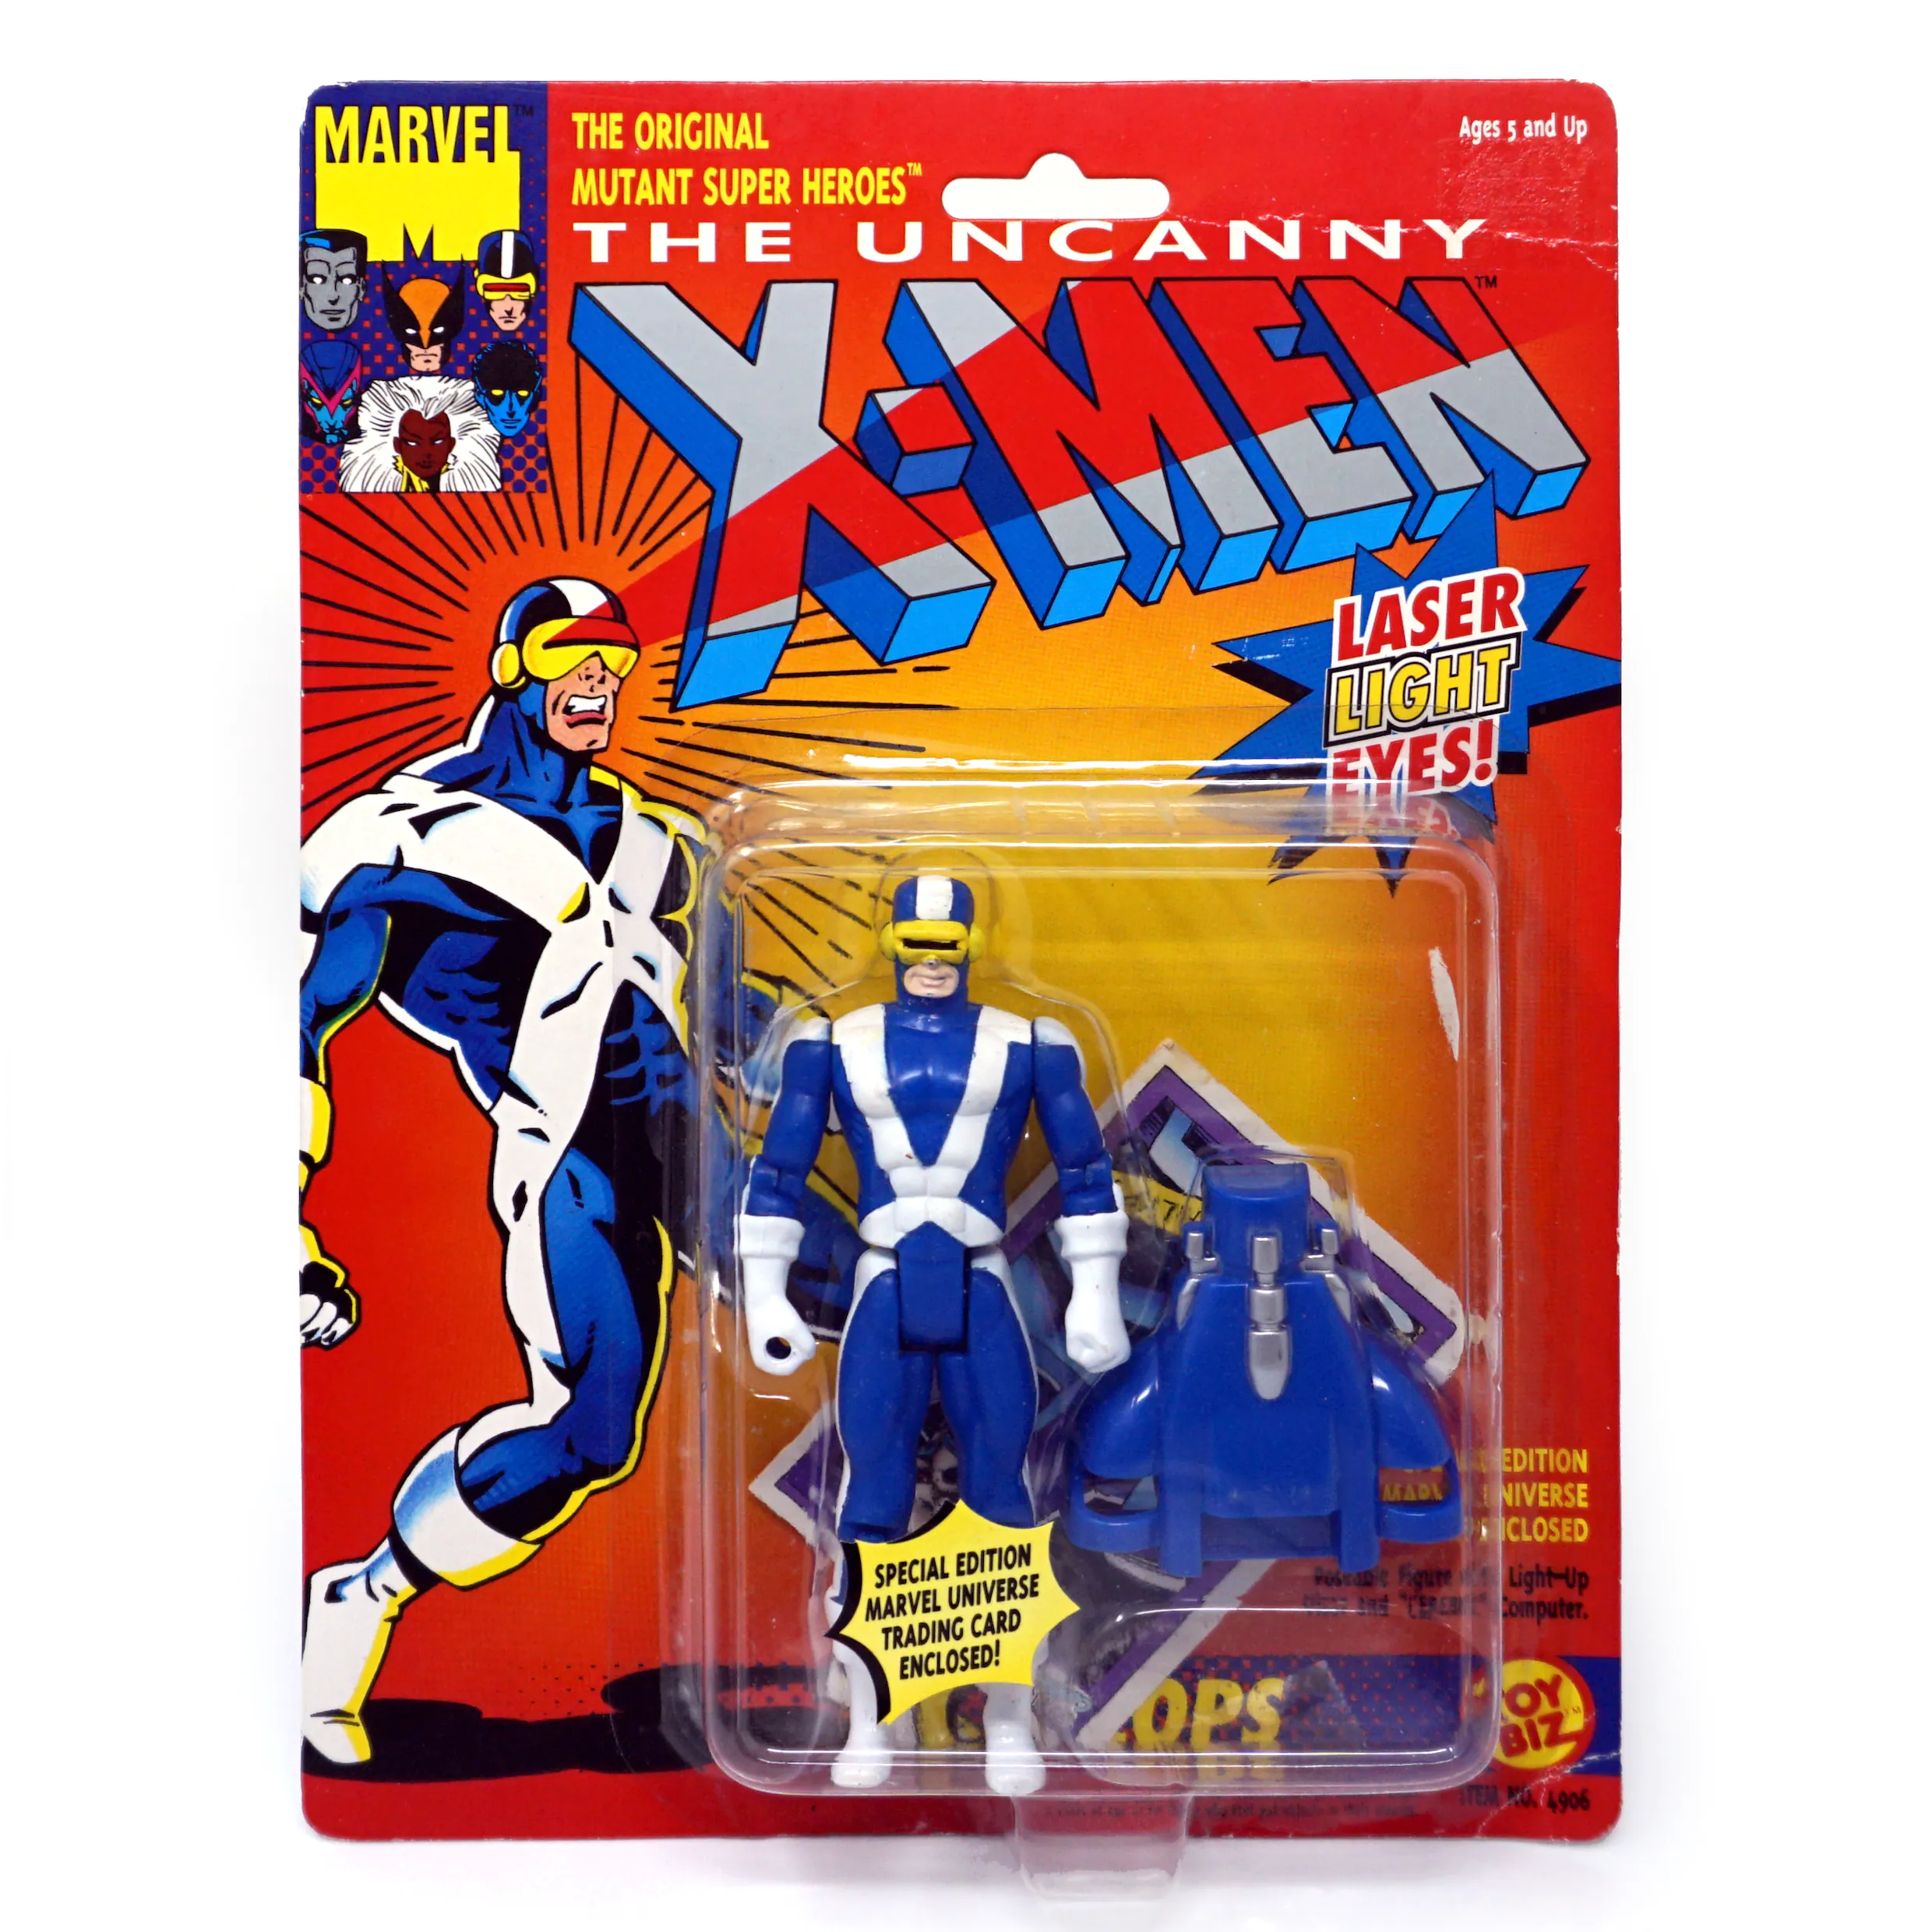 X-Men – Cyclops (Laser light eyes)